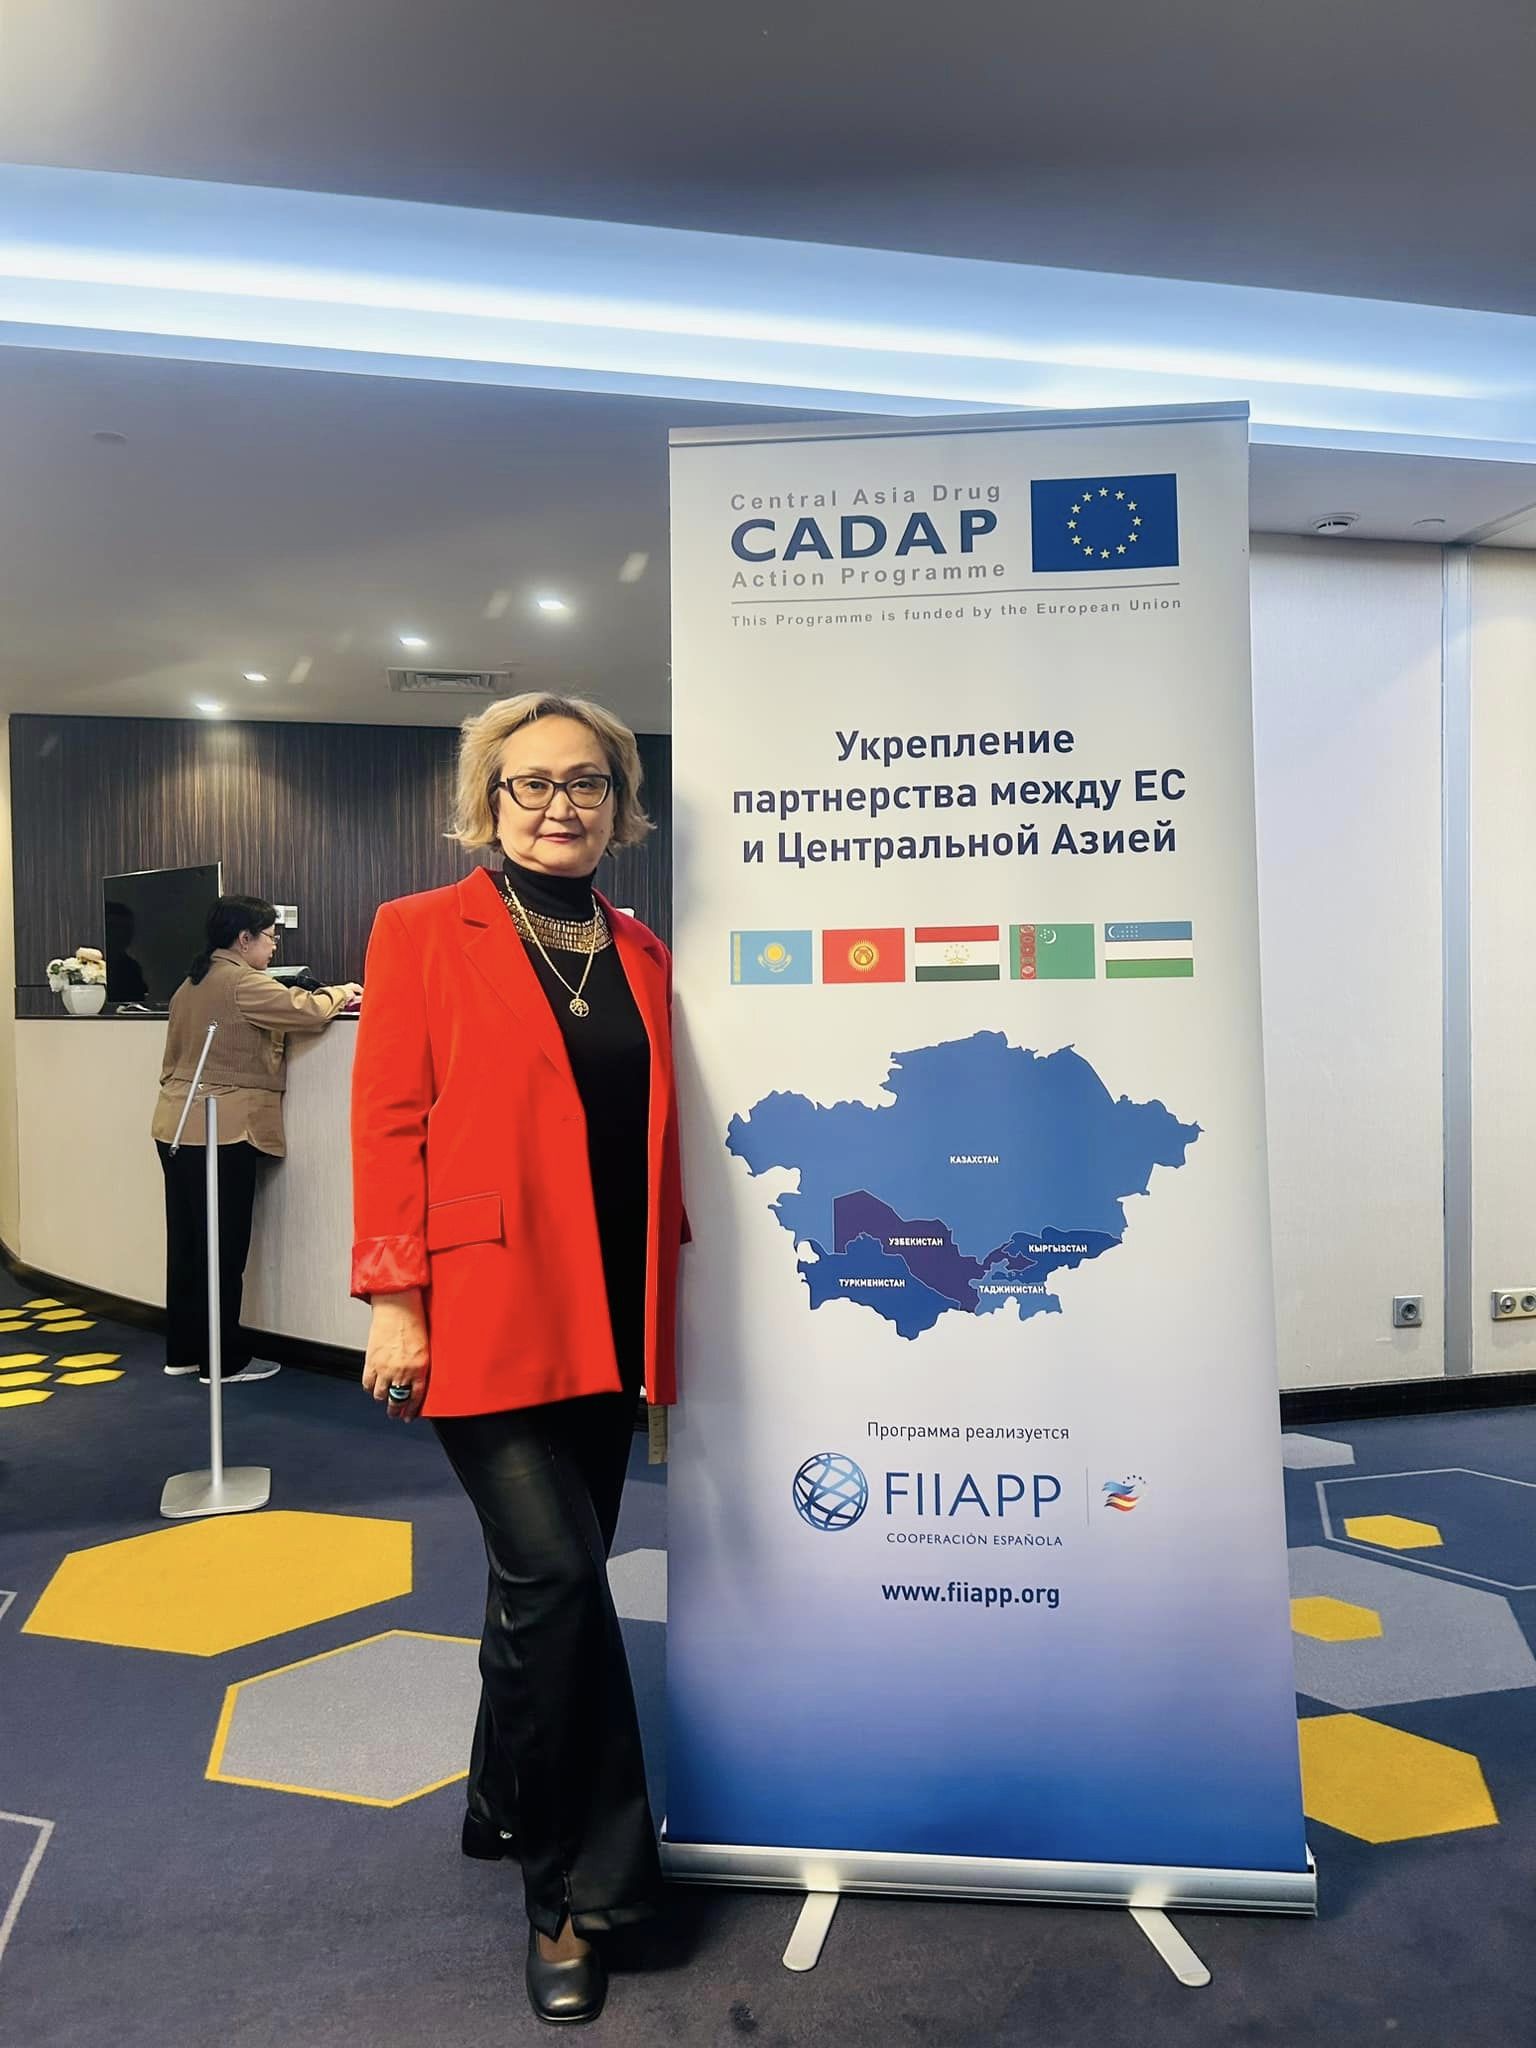 Cadap (Central Asia Drug Action Programme)